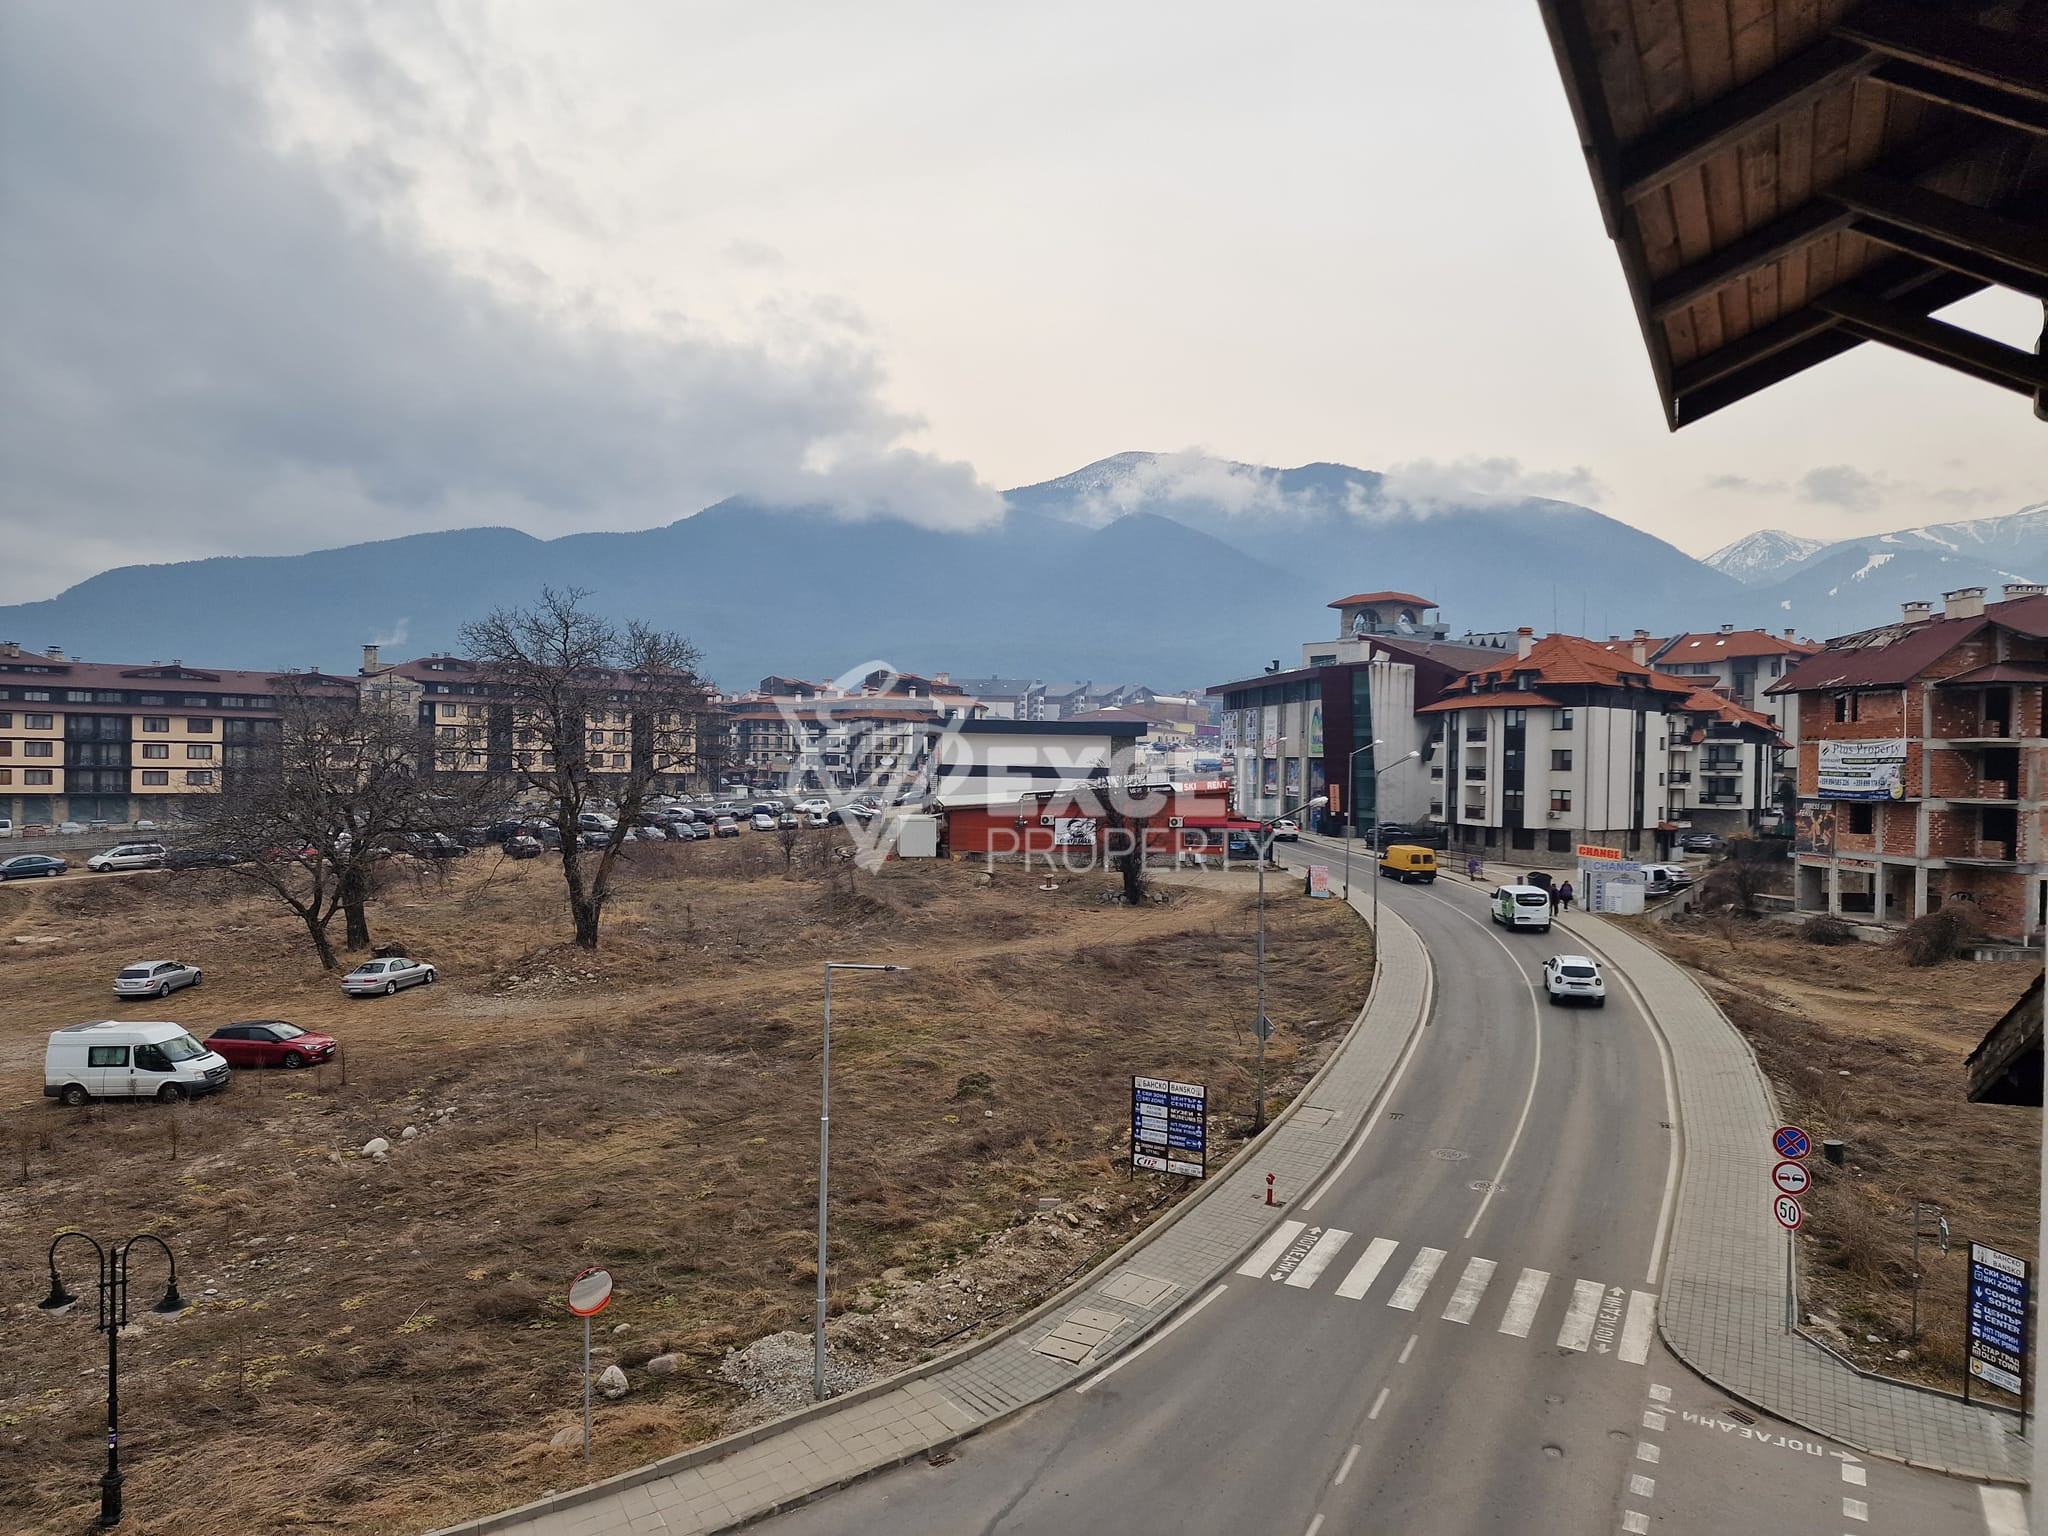 Тристаен апартамент на 200 метра от ски лифта за продажба в MPM Guinness hotel, Банско